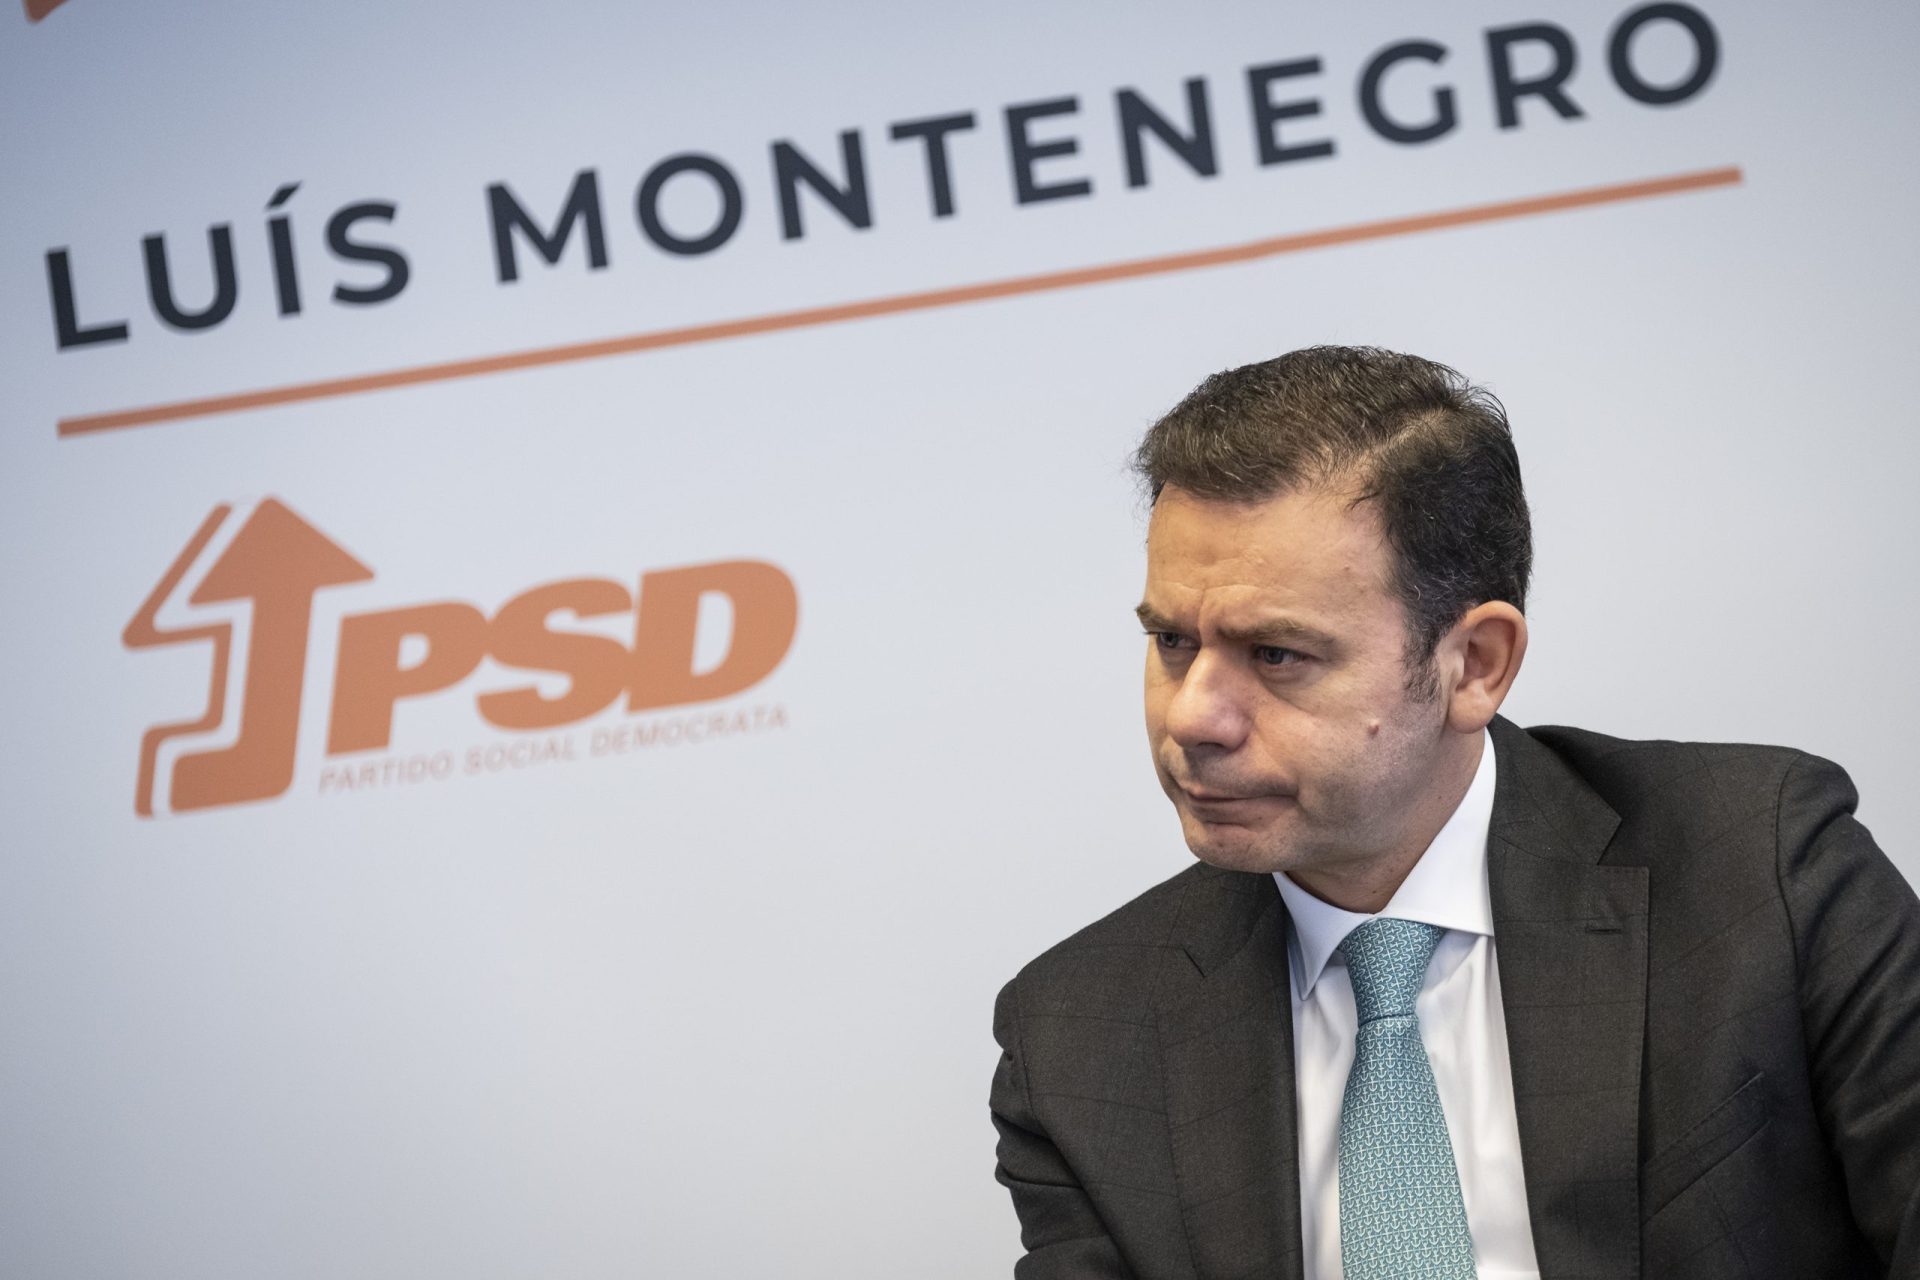 Montenegro afirma que governo “caiu de podre” e não por causa de um processo judicial